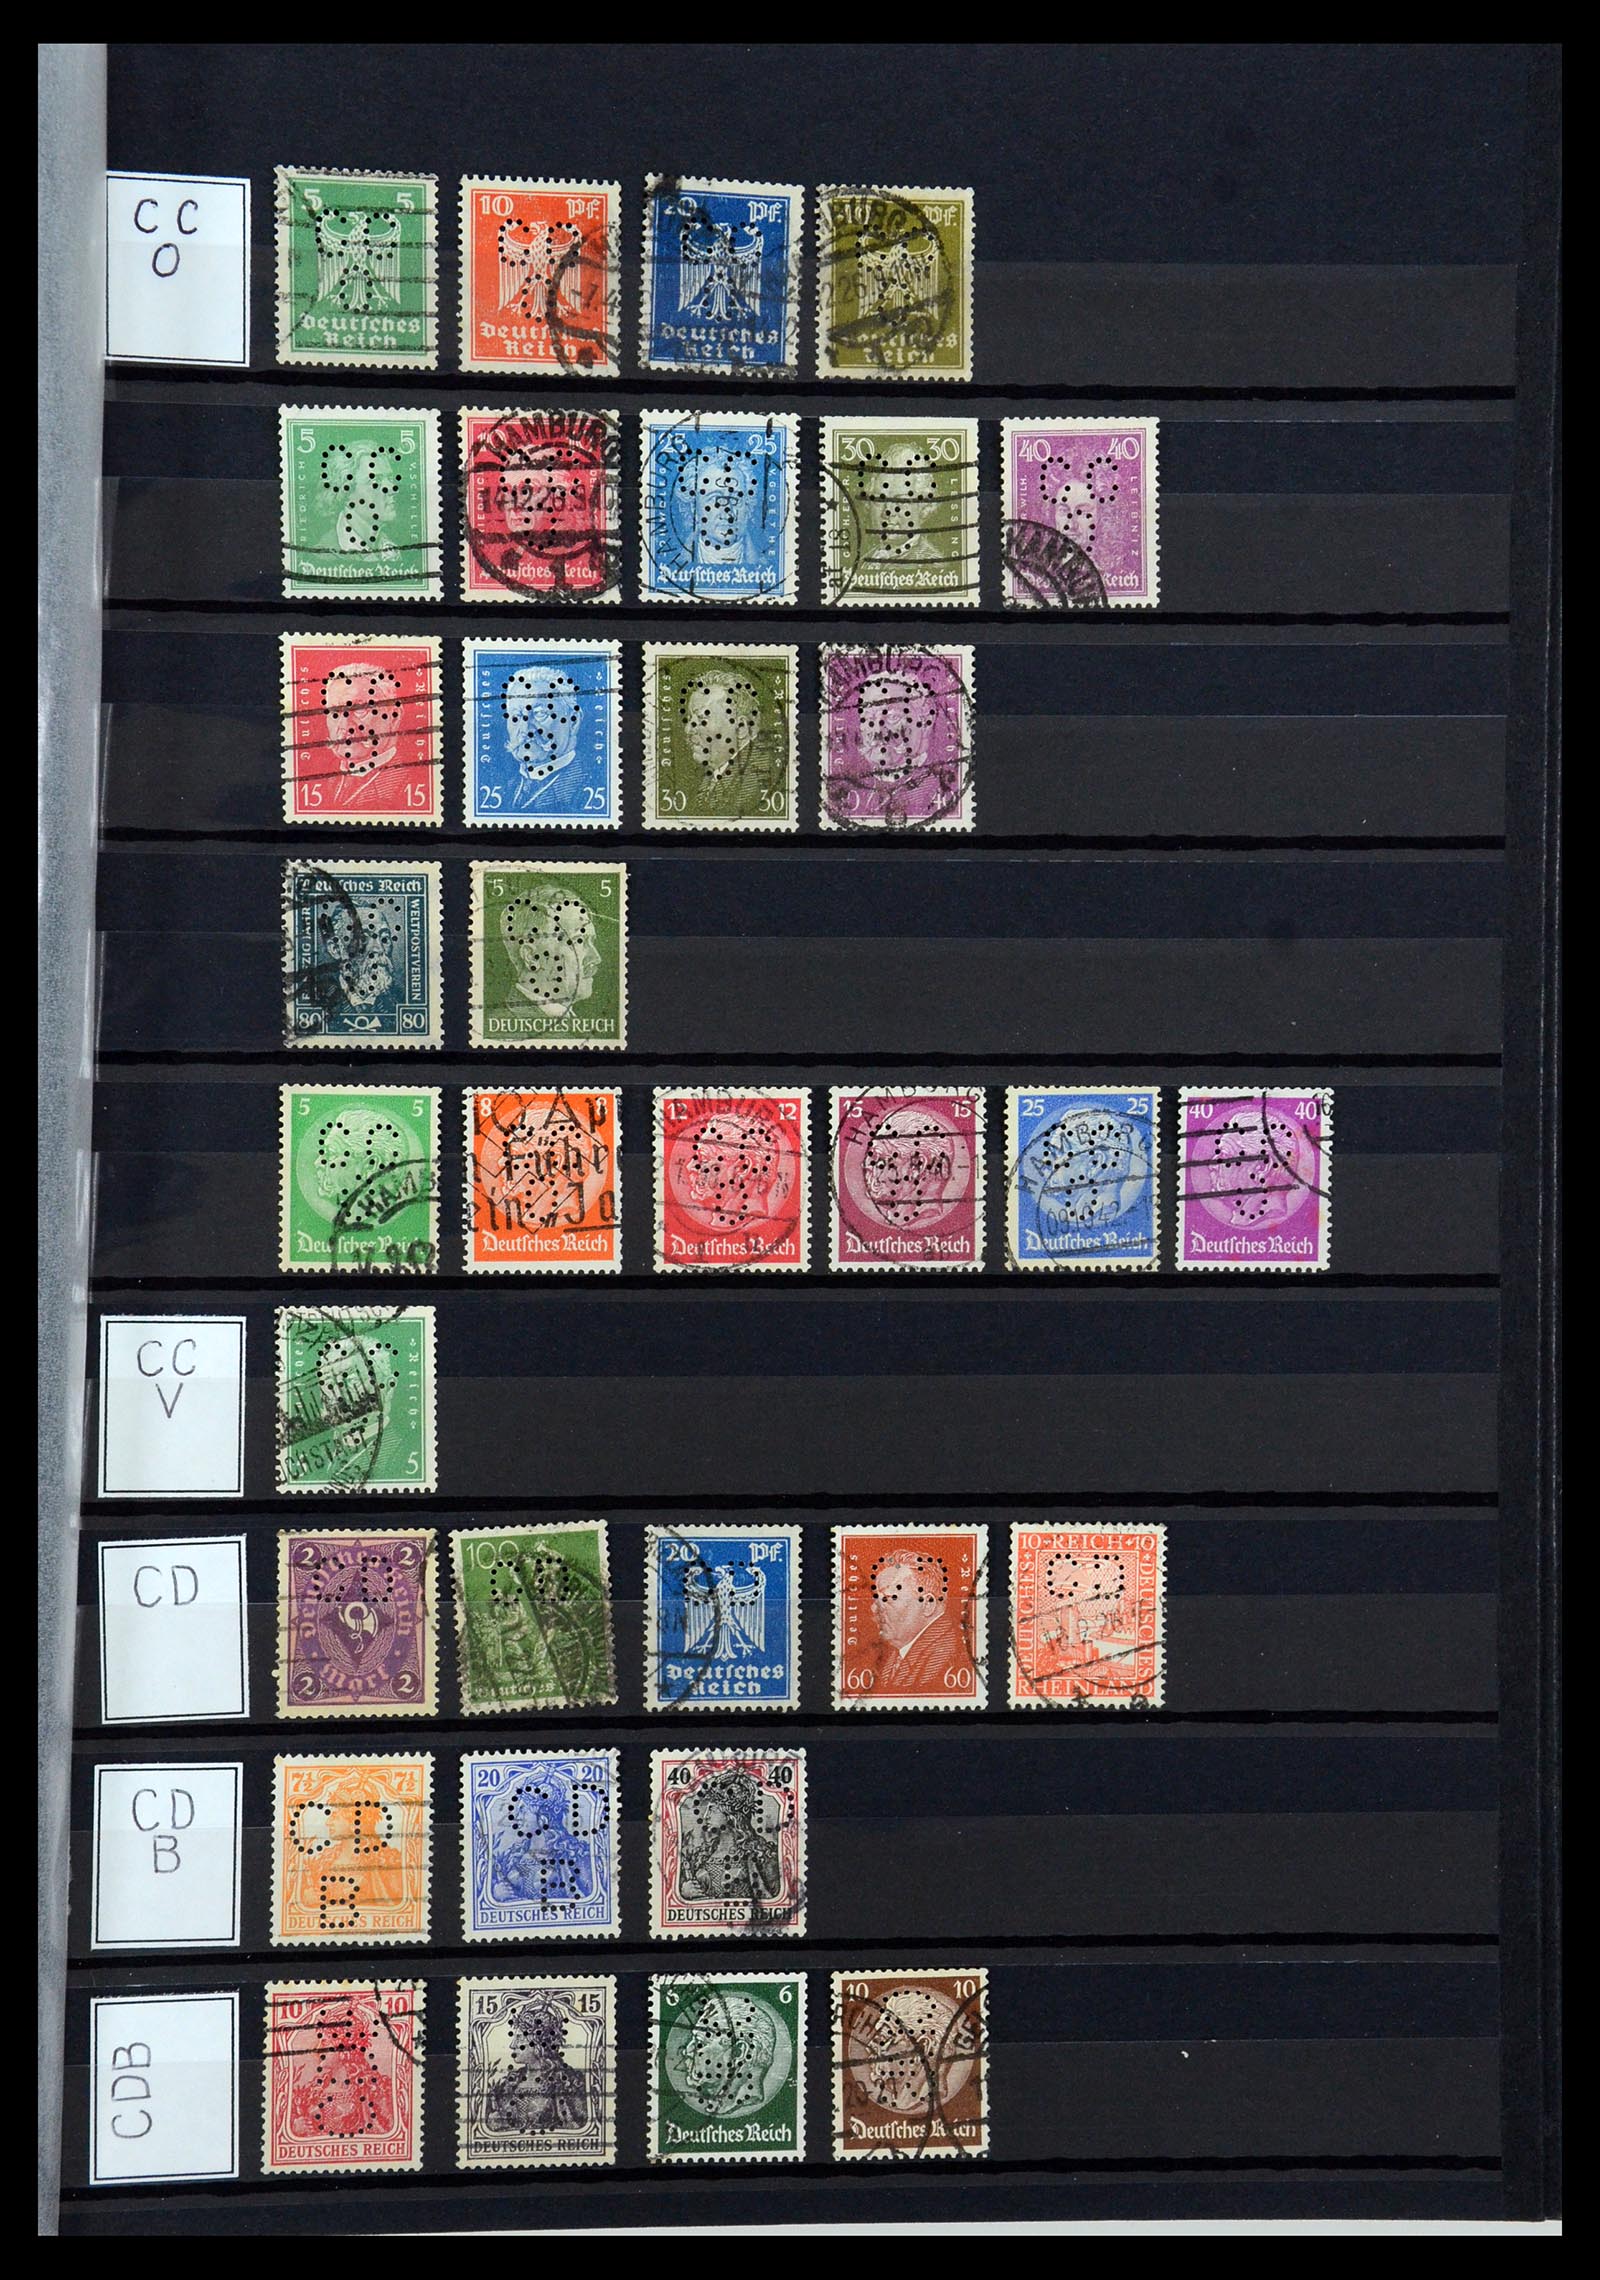 36405 065 - Stamp collection 36405 German Reich perfins 1880-1945.